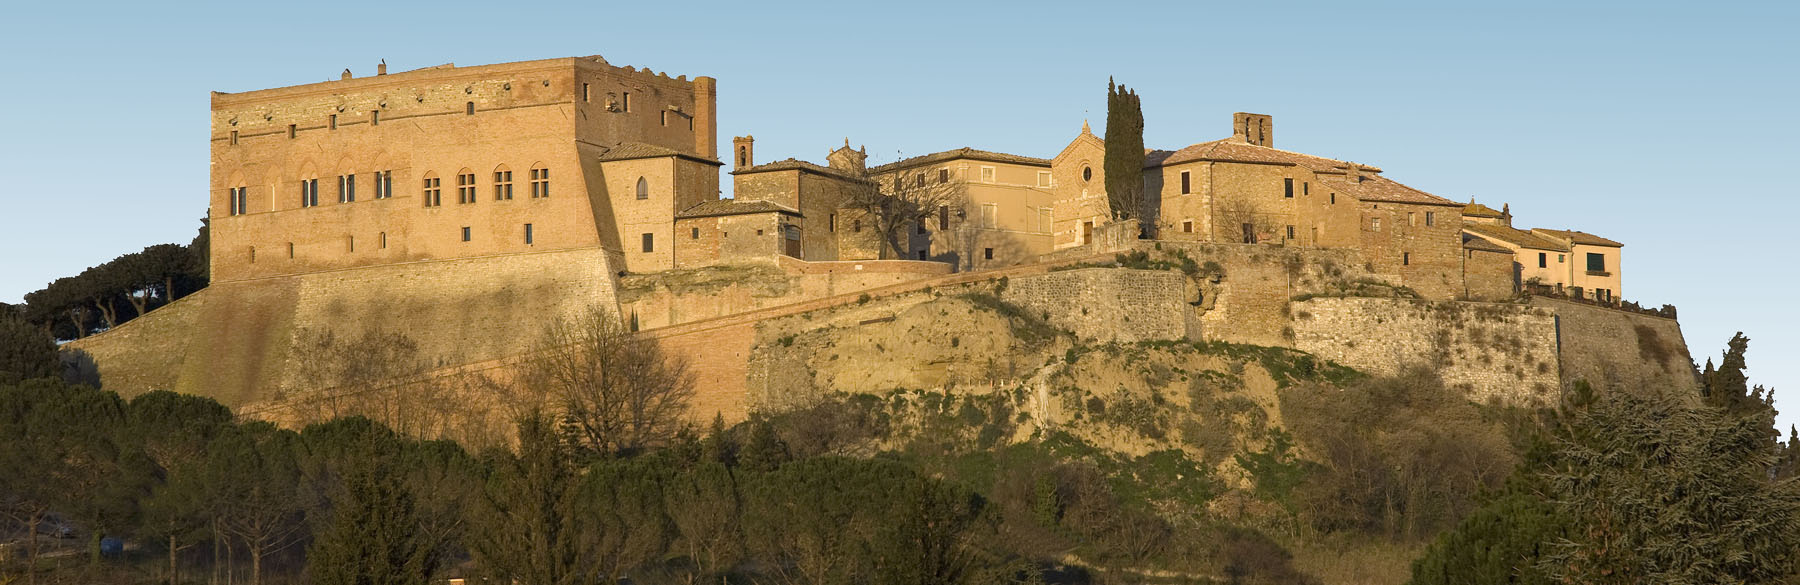 Castello di San Giovanni d'Asso